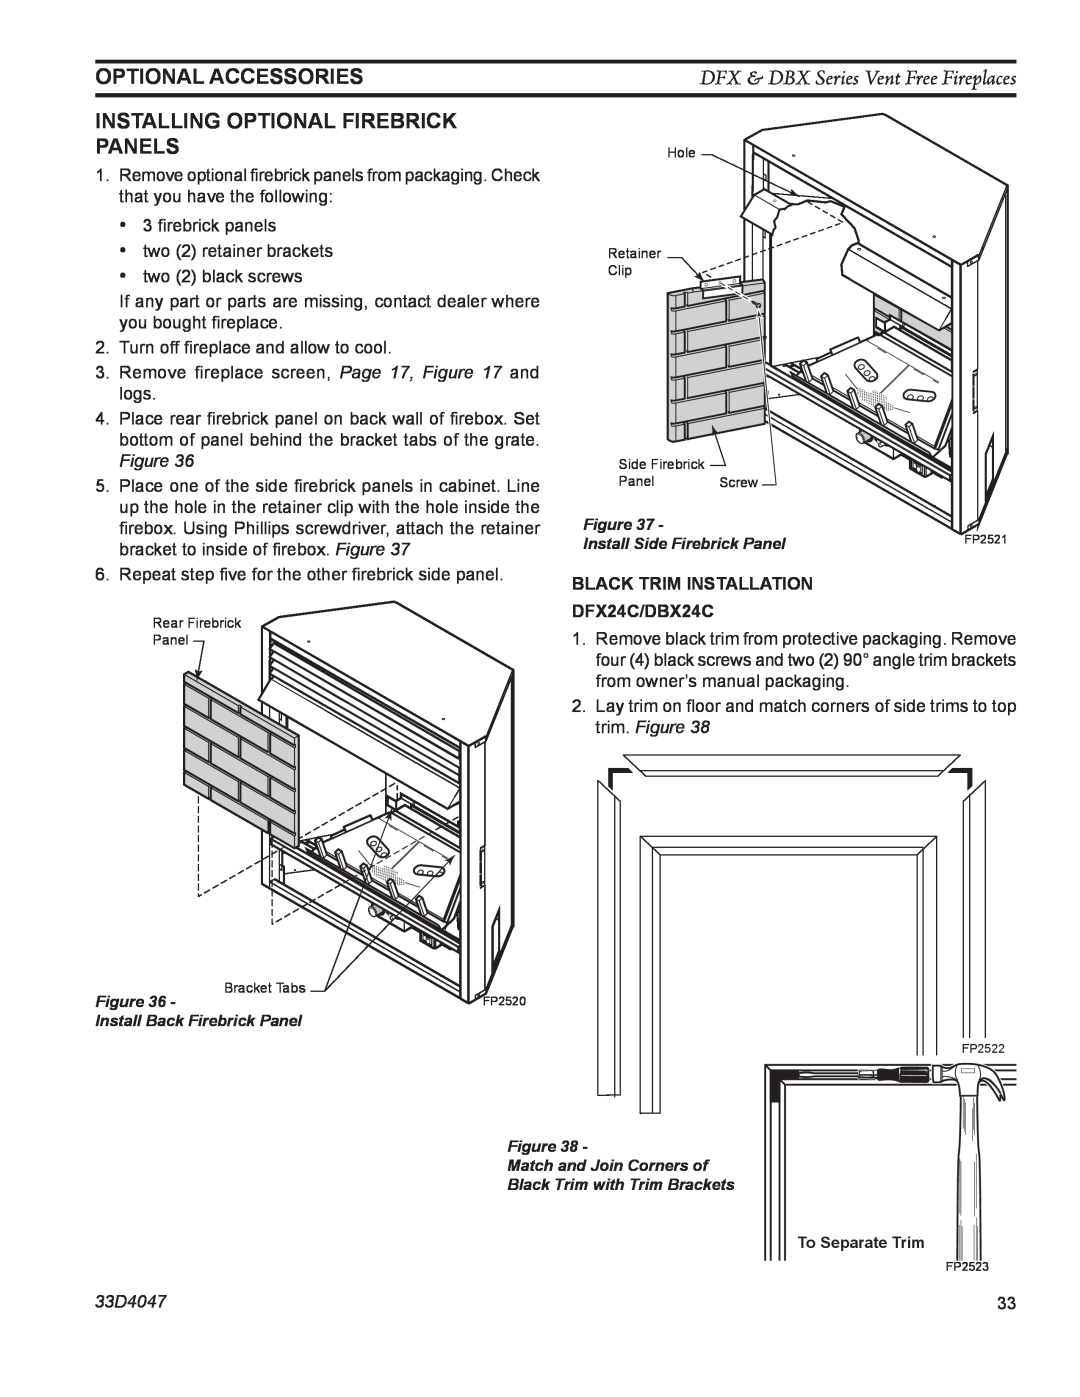 Monessen Hearth DFX24C Optional Accessories, DFX & DBX Series Vent Free Fireplaces, trim. Figure, 33D4047 